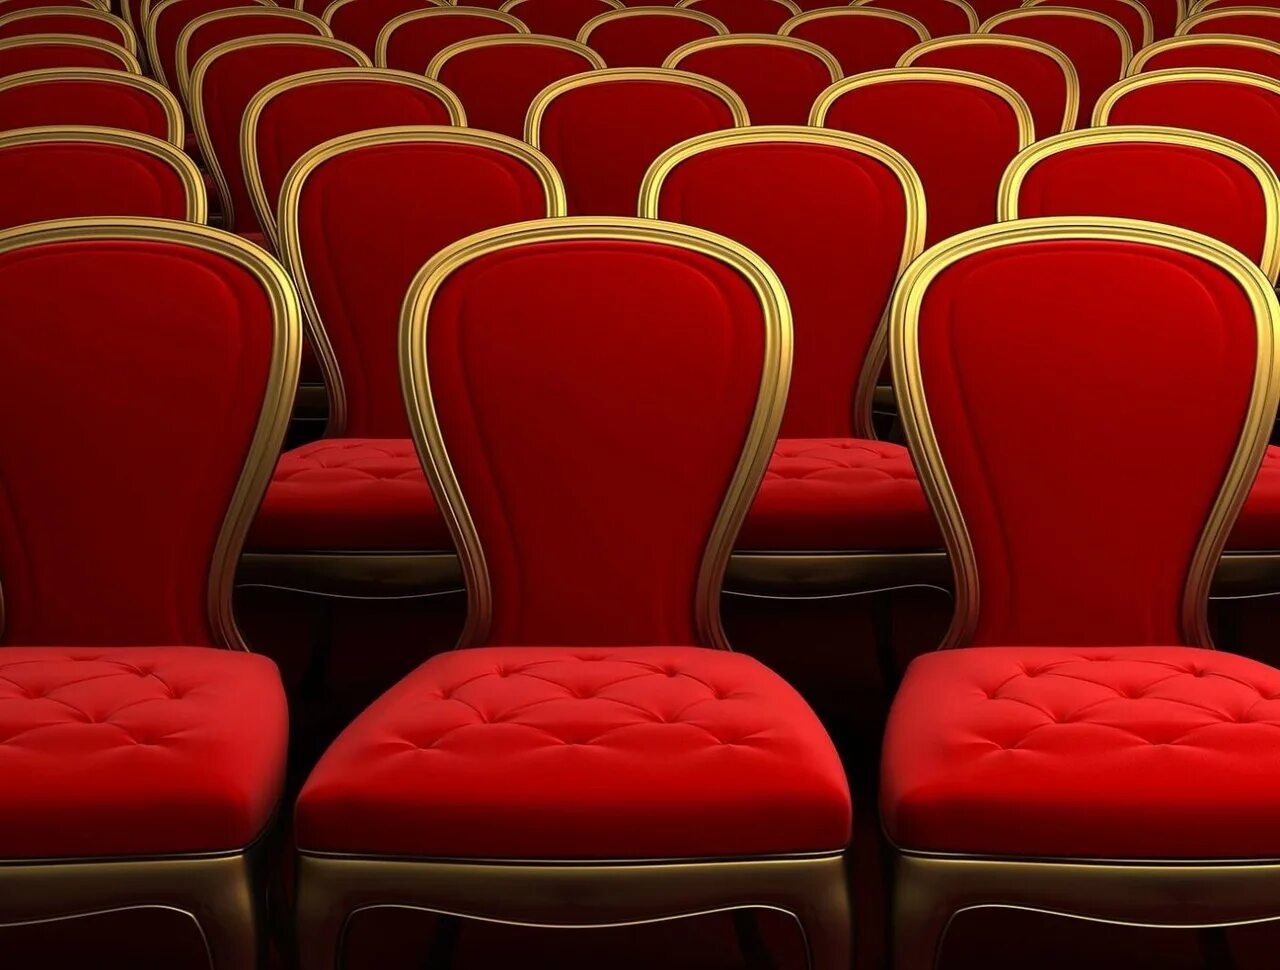 Театральные кресла. Кресла в театре. Зрительный зал кресла. Театральные кресла в зале. Театральные стулья